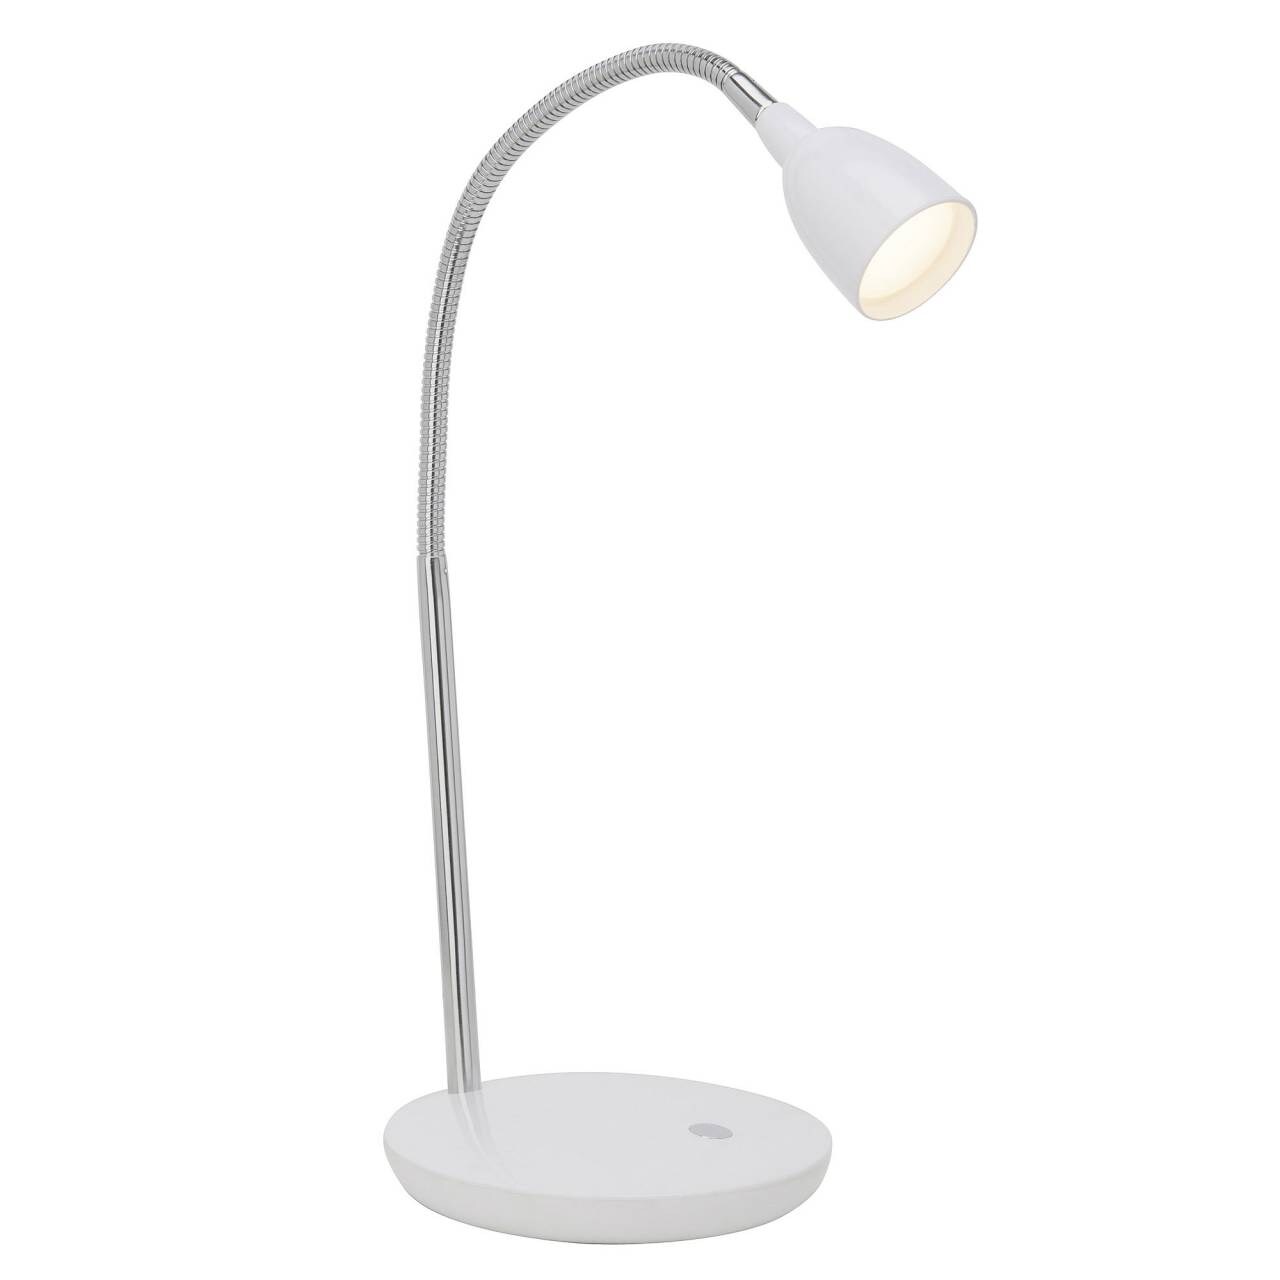 BRILLIANT Lampe Anthony LED Tischleuchte eisen/weiß   1x 2.4W LED integriert, (200lm, 3000K)   Mit Druckschalter an der 